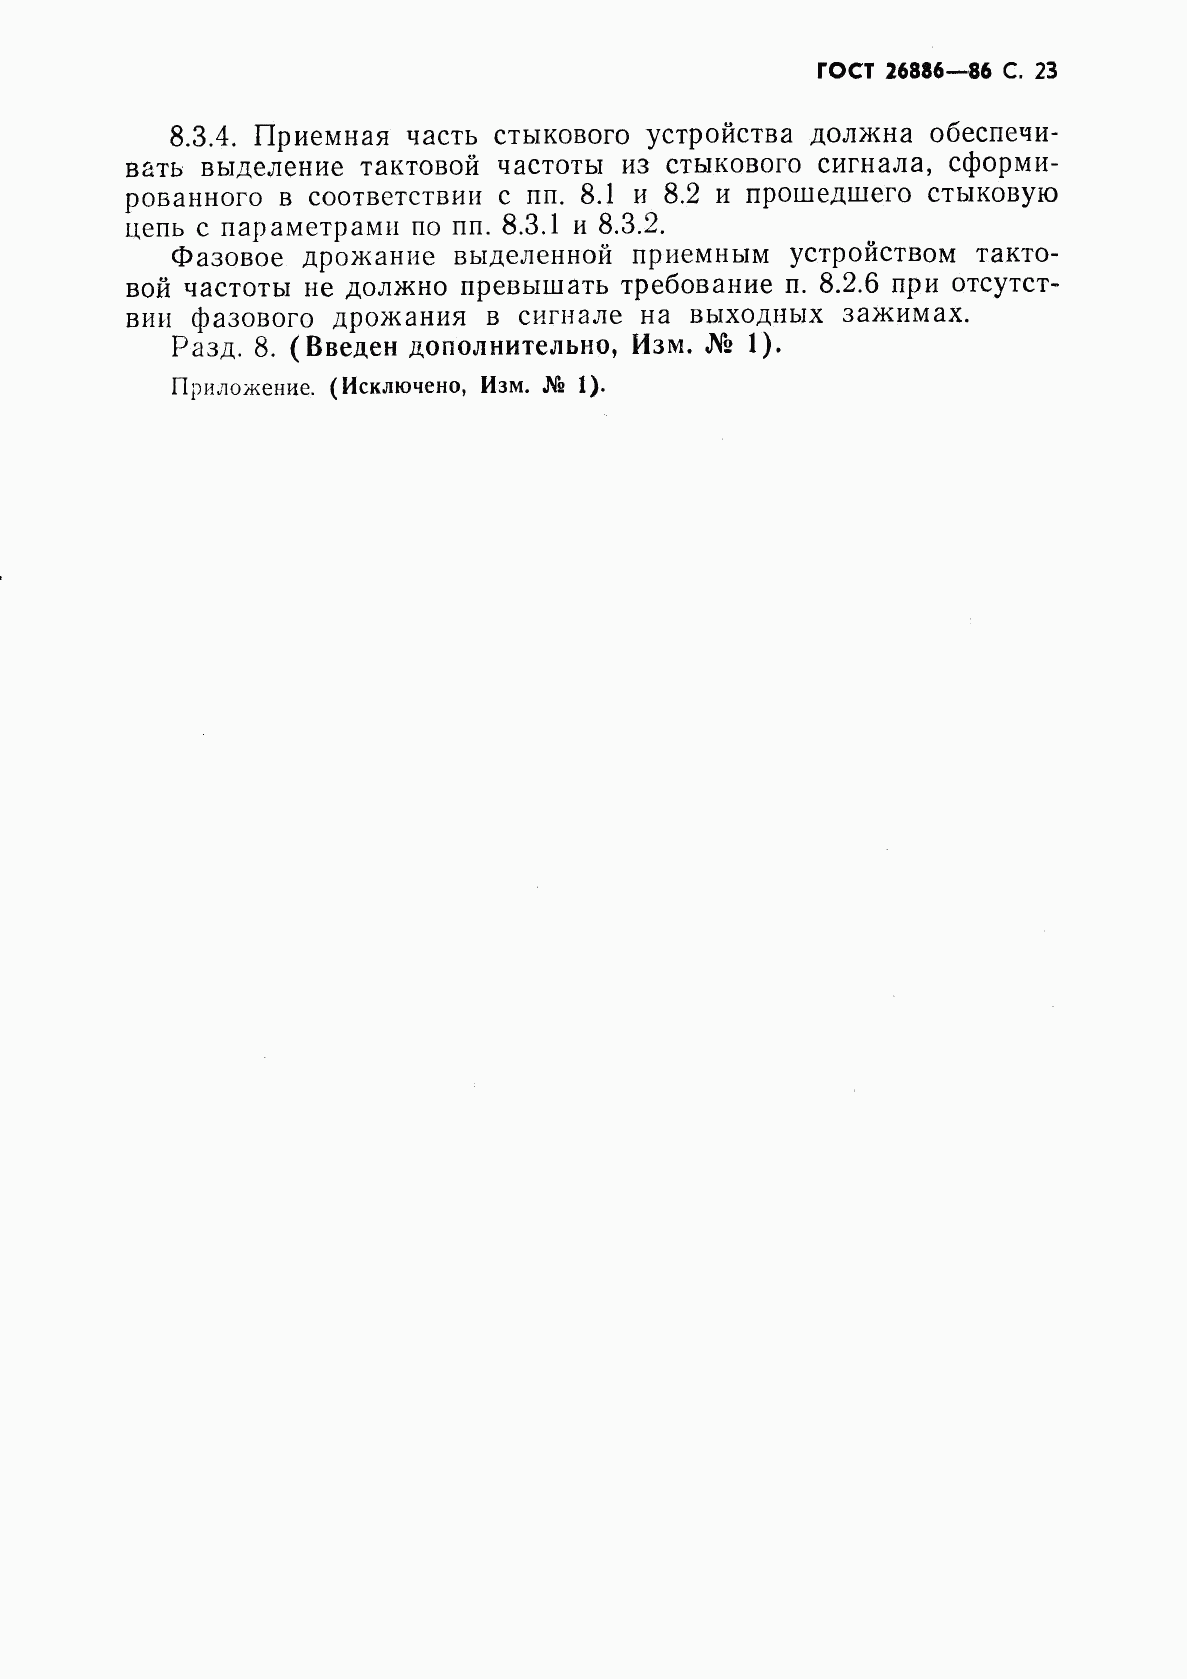 ГОСТ 26886-86, страница 24